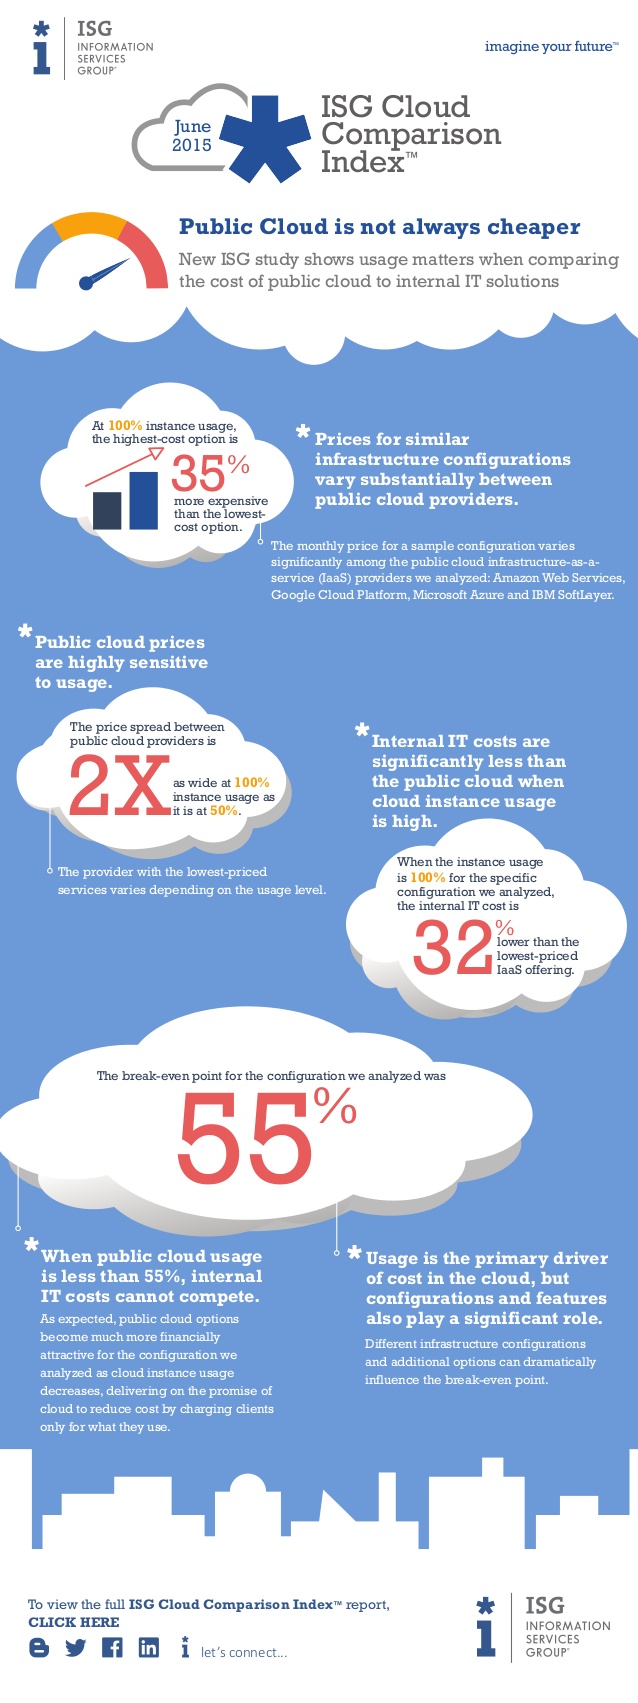 isg-cloud-comparison-infographic-june-2015-1-638